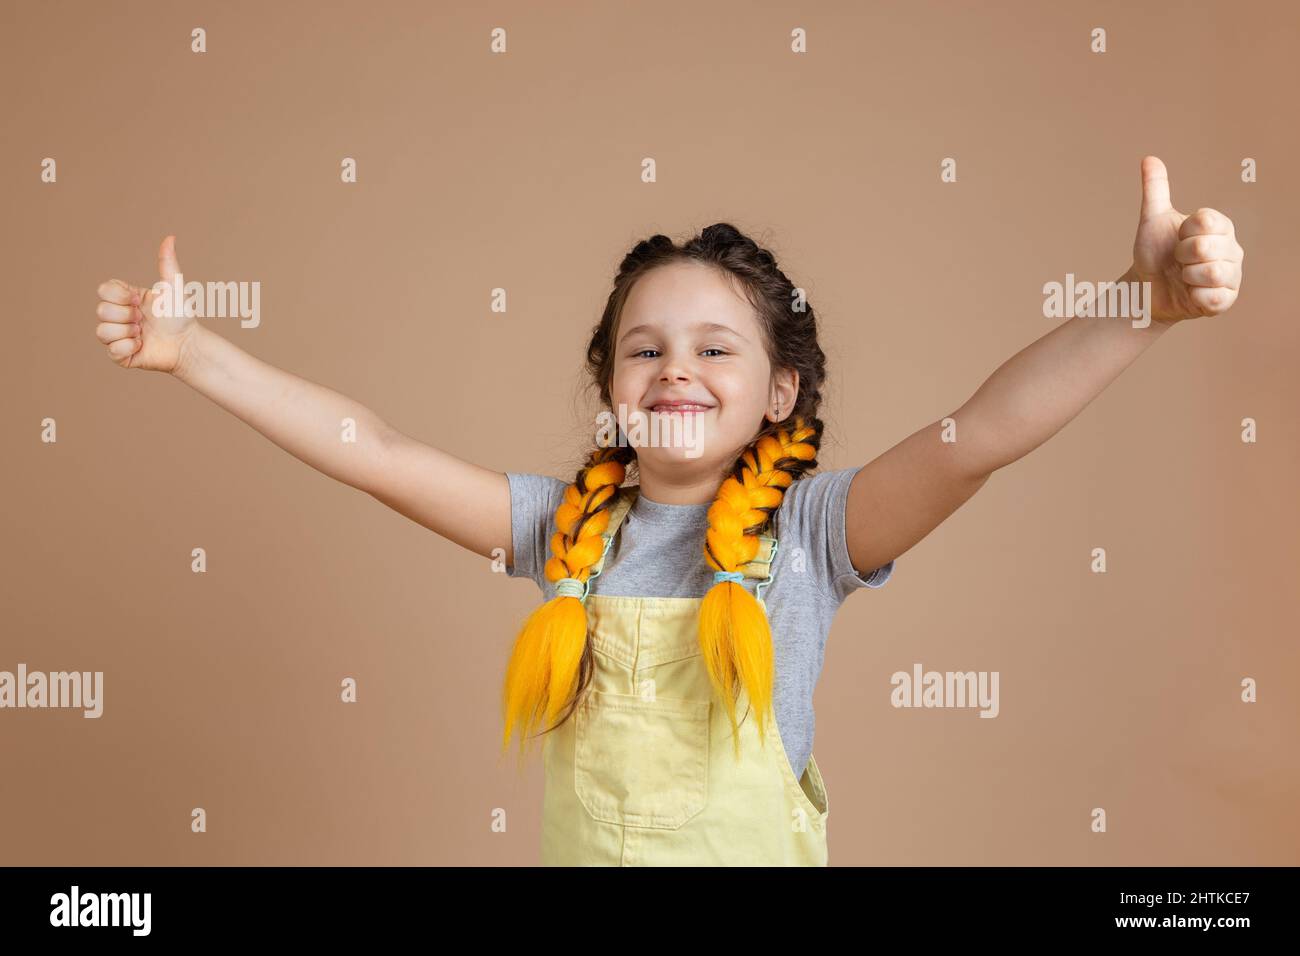 Giovane ragazza sorridente felice con pigtail giallo kanekalon guardando la macchina fotografica, mostrando come i segni con le mani indossare tuta gialla e t grigio Foto Stock